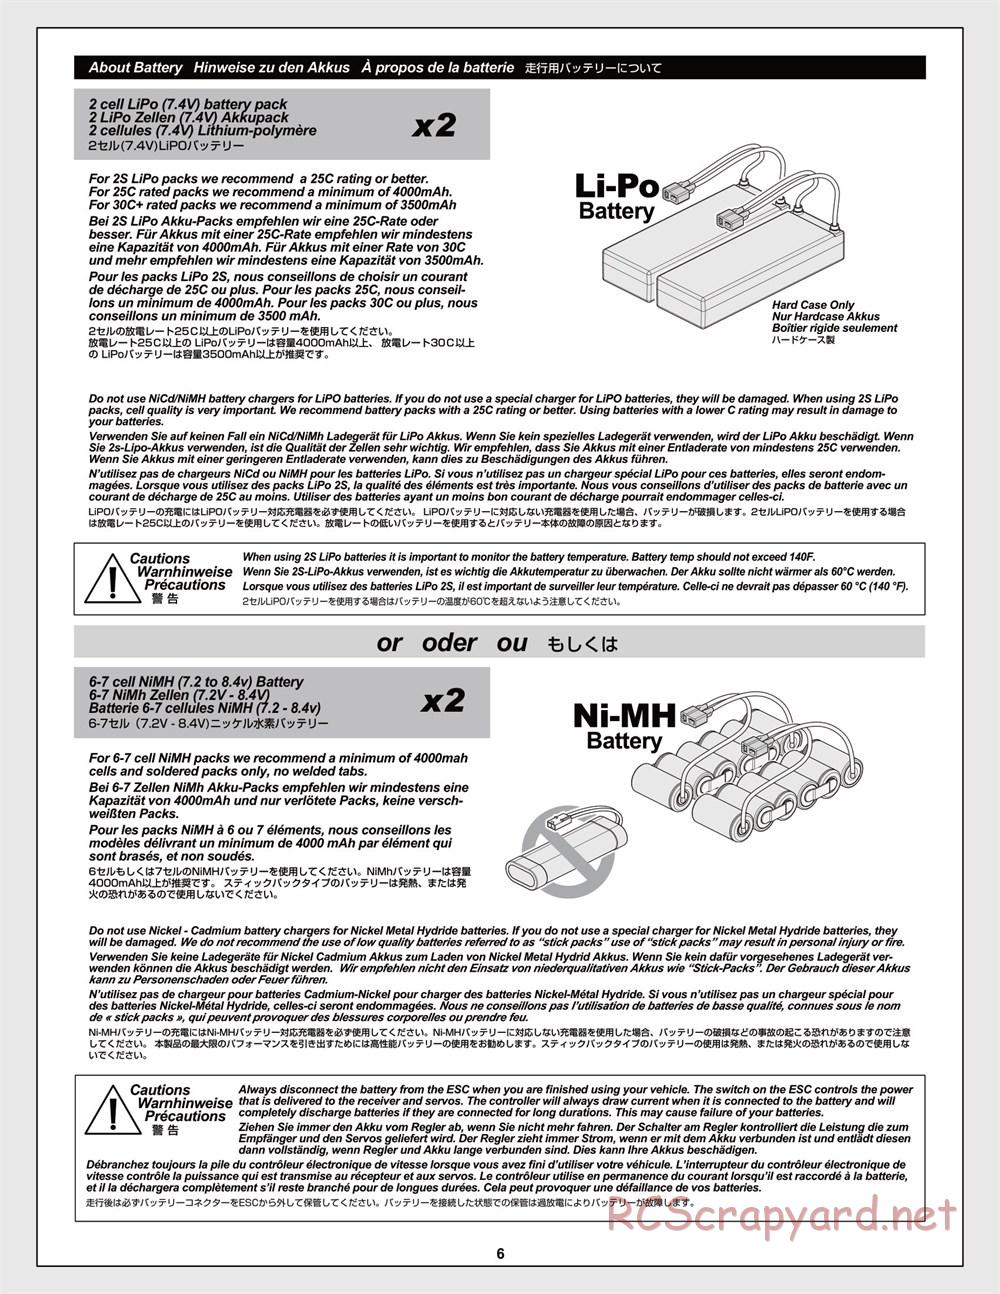 HPI - Trophy Flux Buggy - Manual - Page 6